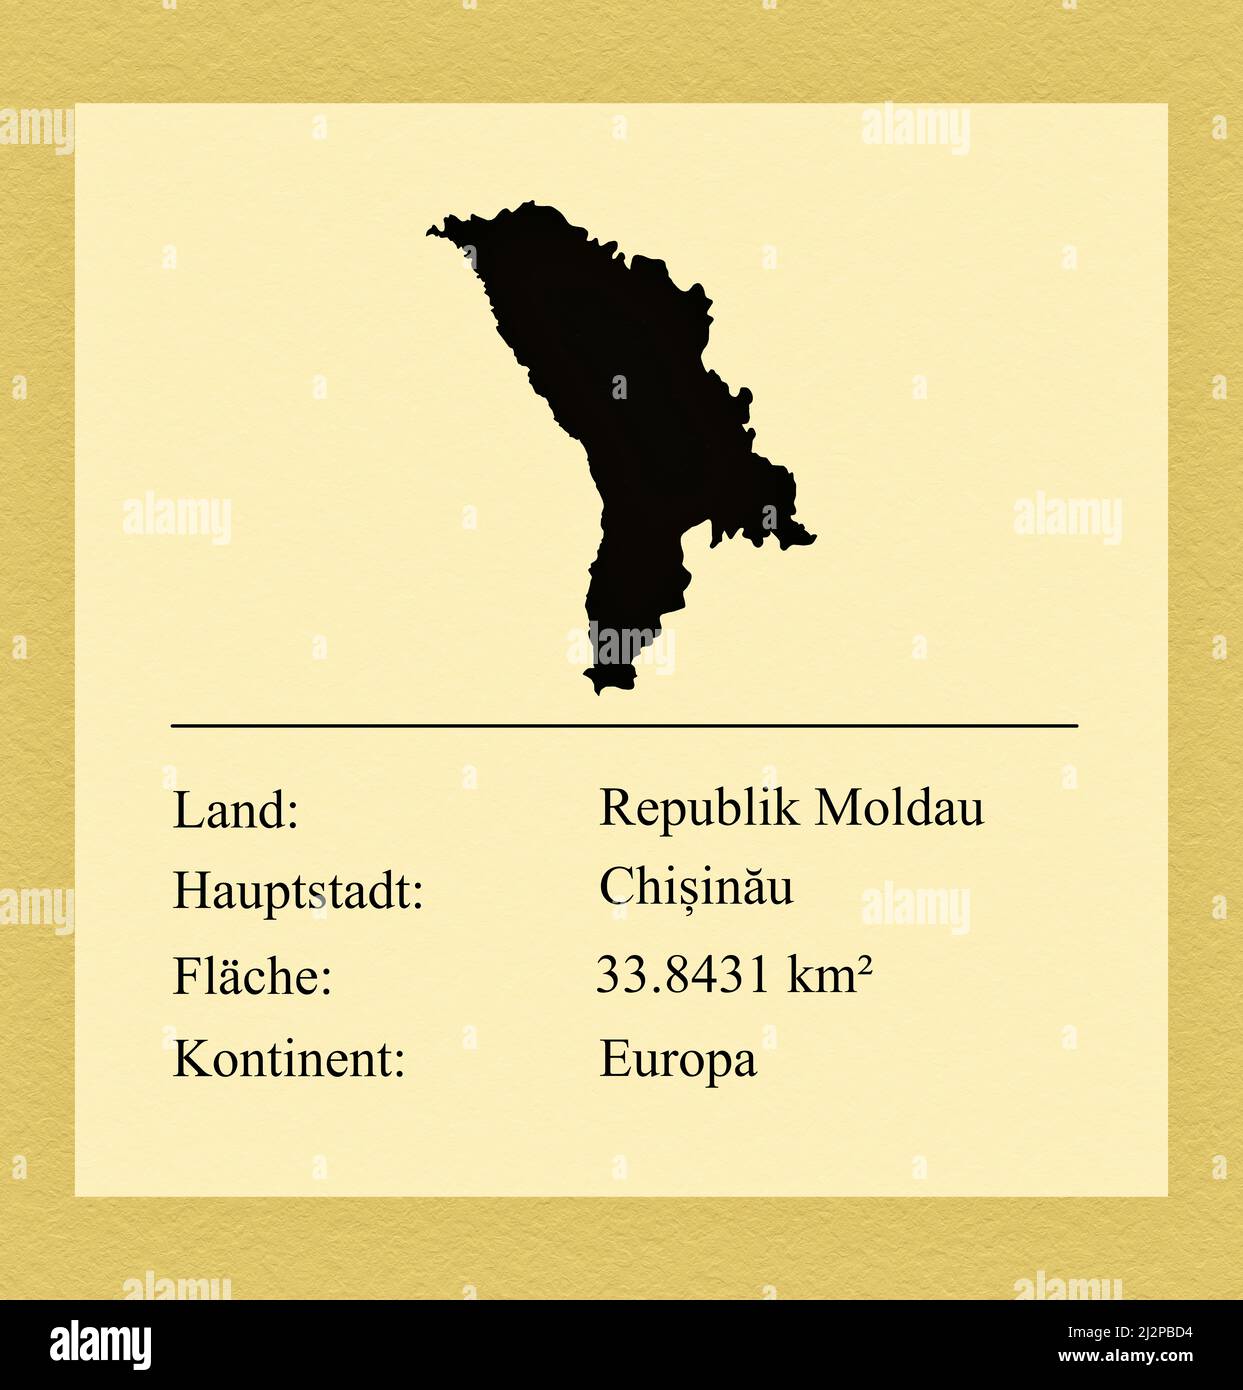 Umrisse des Landes Republik Moldau, darunter ein kleiner Steckbrief mit Ländernamen, Hauptstadt, Fläche und Kontinent Foto Stock